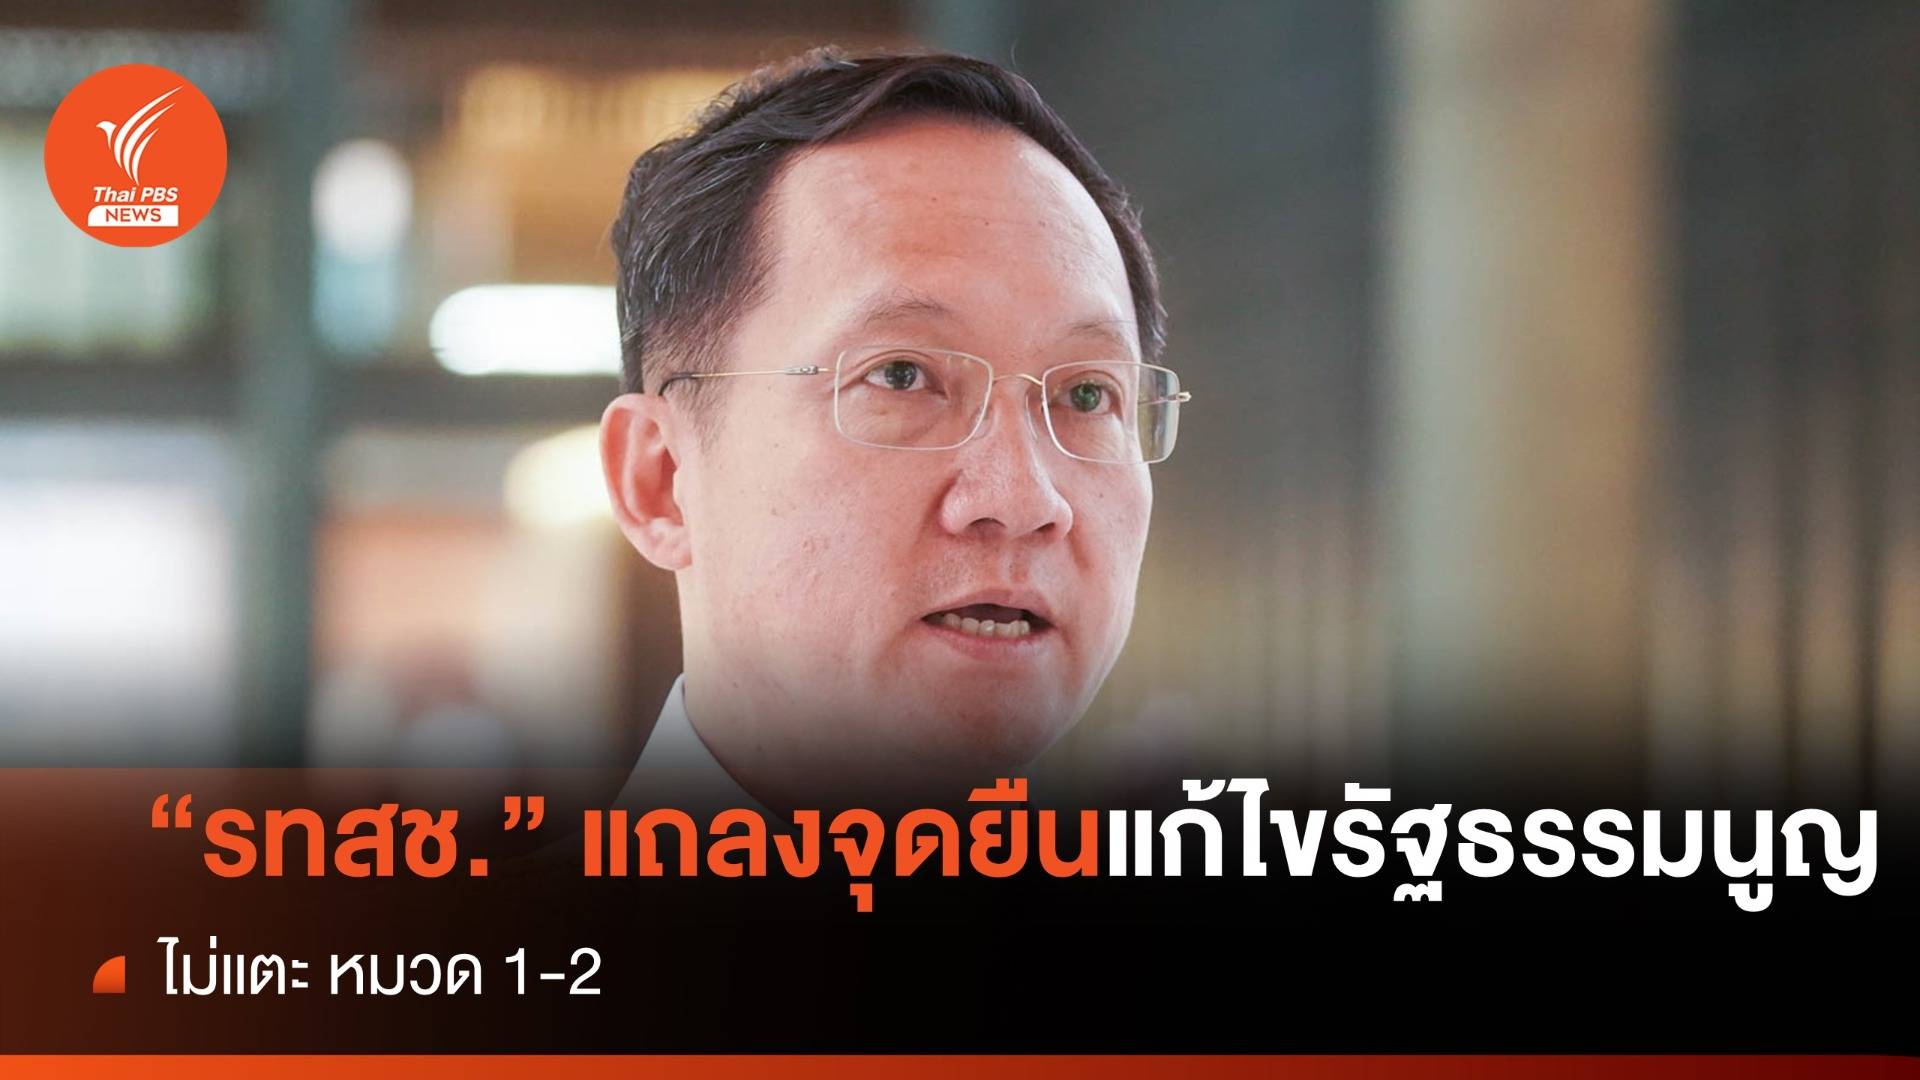 "รวมไทยสร้างชาติ" แถลงจุดยืนแก้ไขรัฐธรรมนูญ  ต้องไม่แตะ หมวด 1-2 